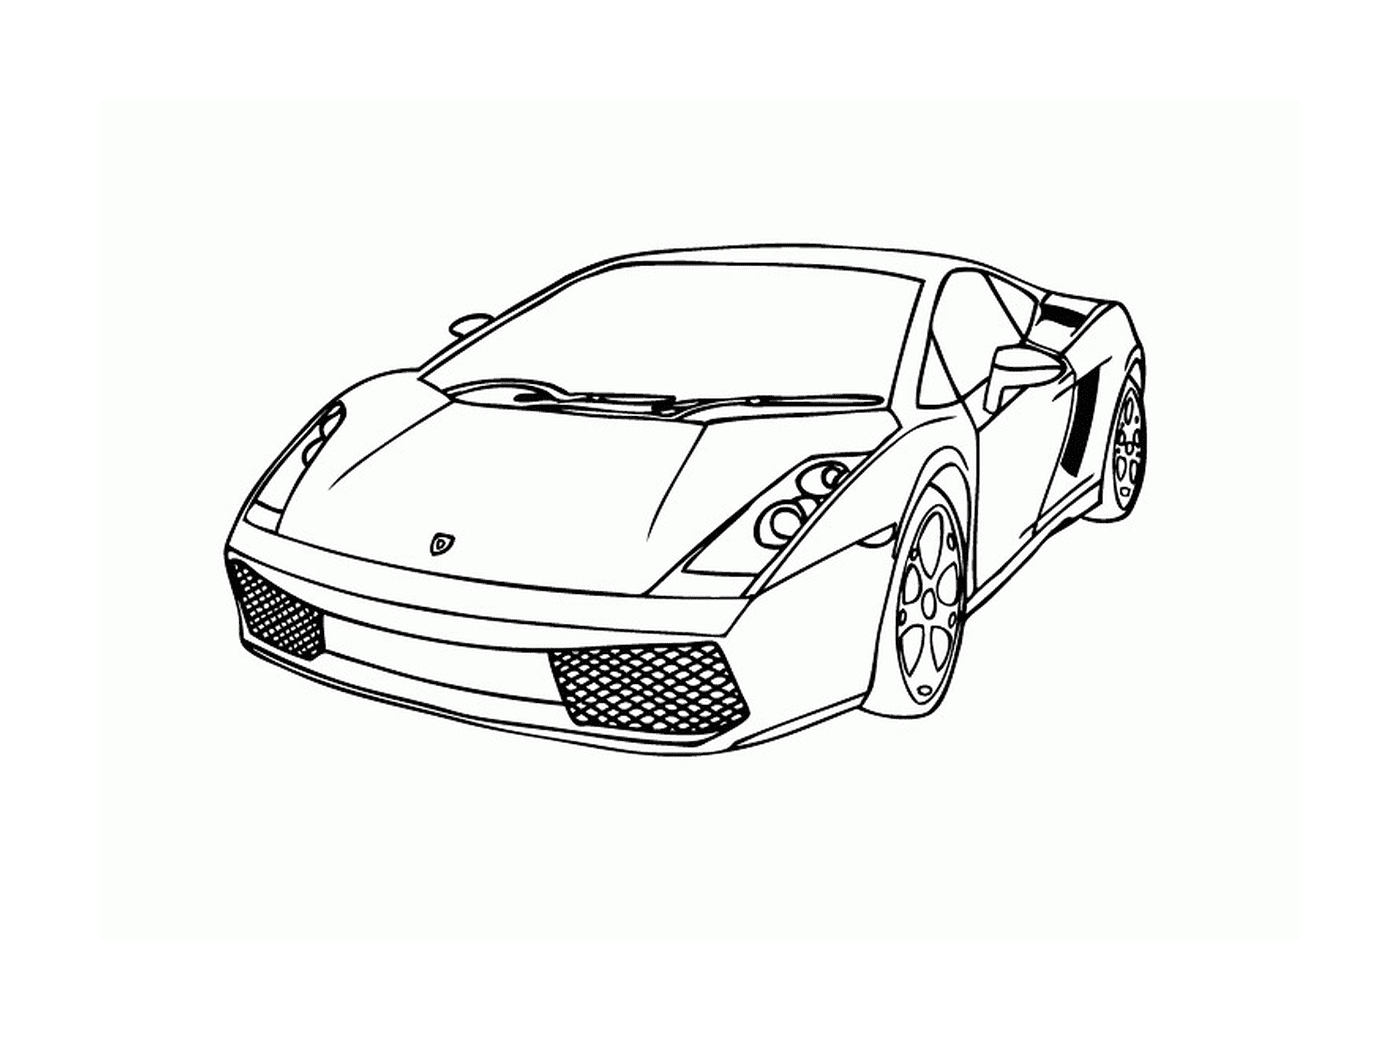  Carros Lamborghini, vista superior 